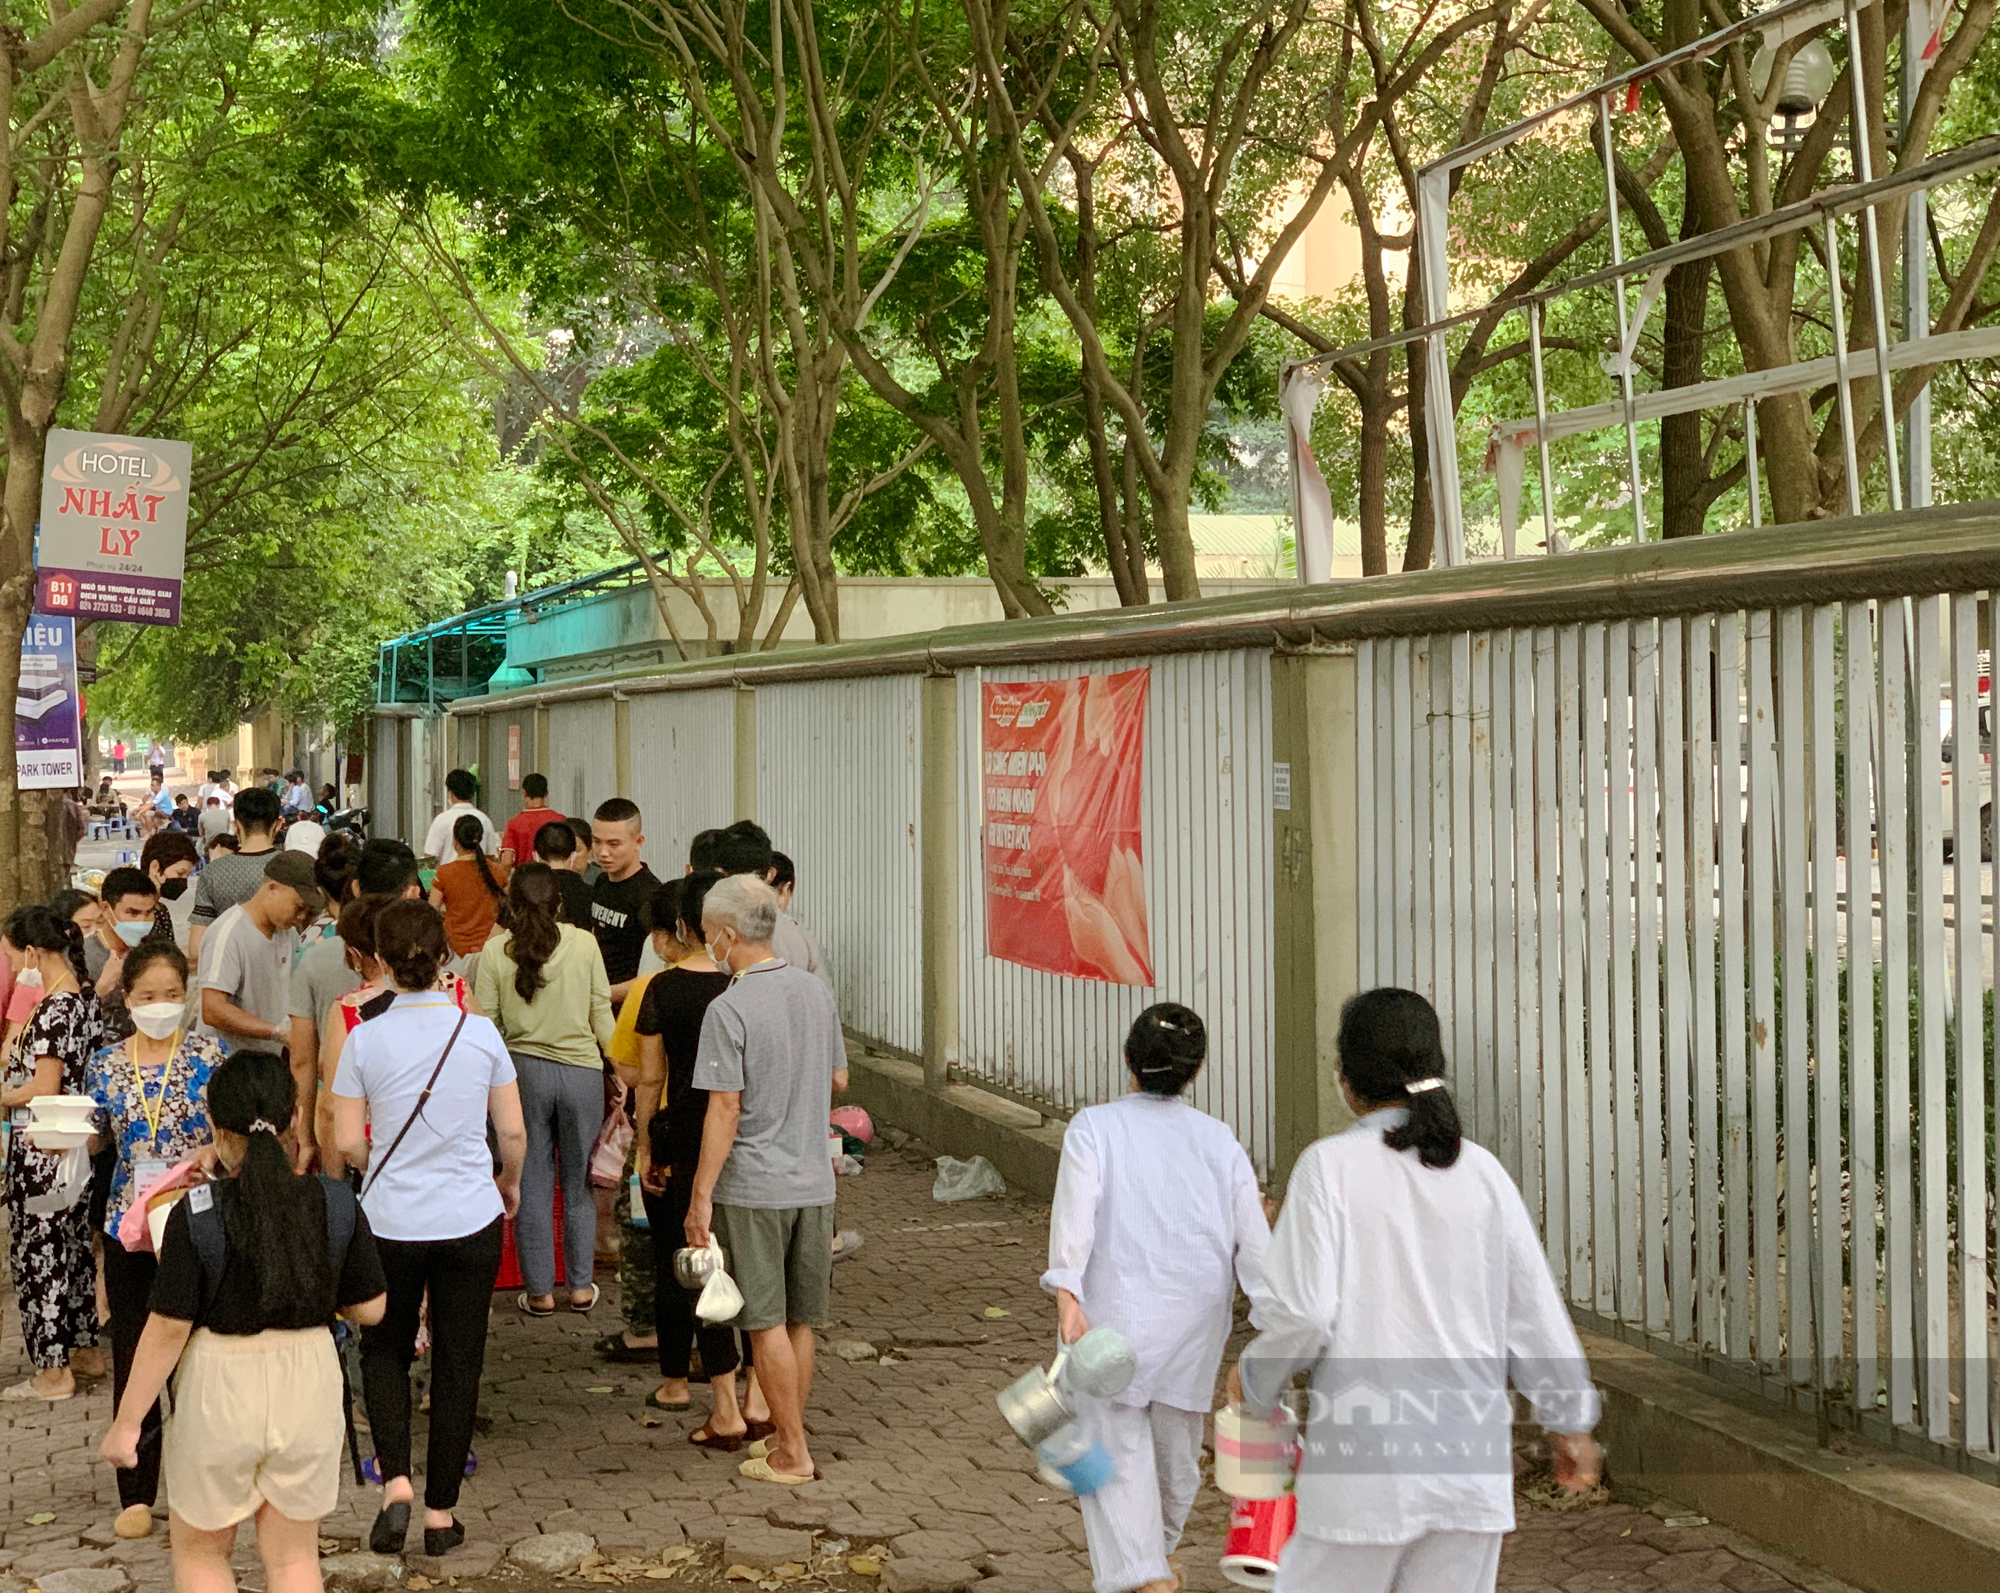 Báo Dân Việt tiếp tục hỗ trợ 1000 bệnh nhân nghèo bữa sáng miễn phí  - Ảnh 1.